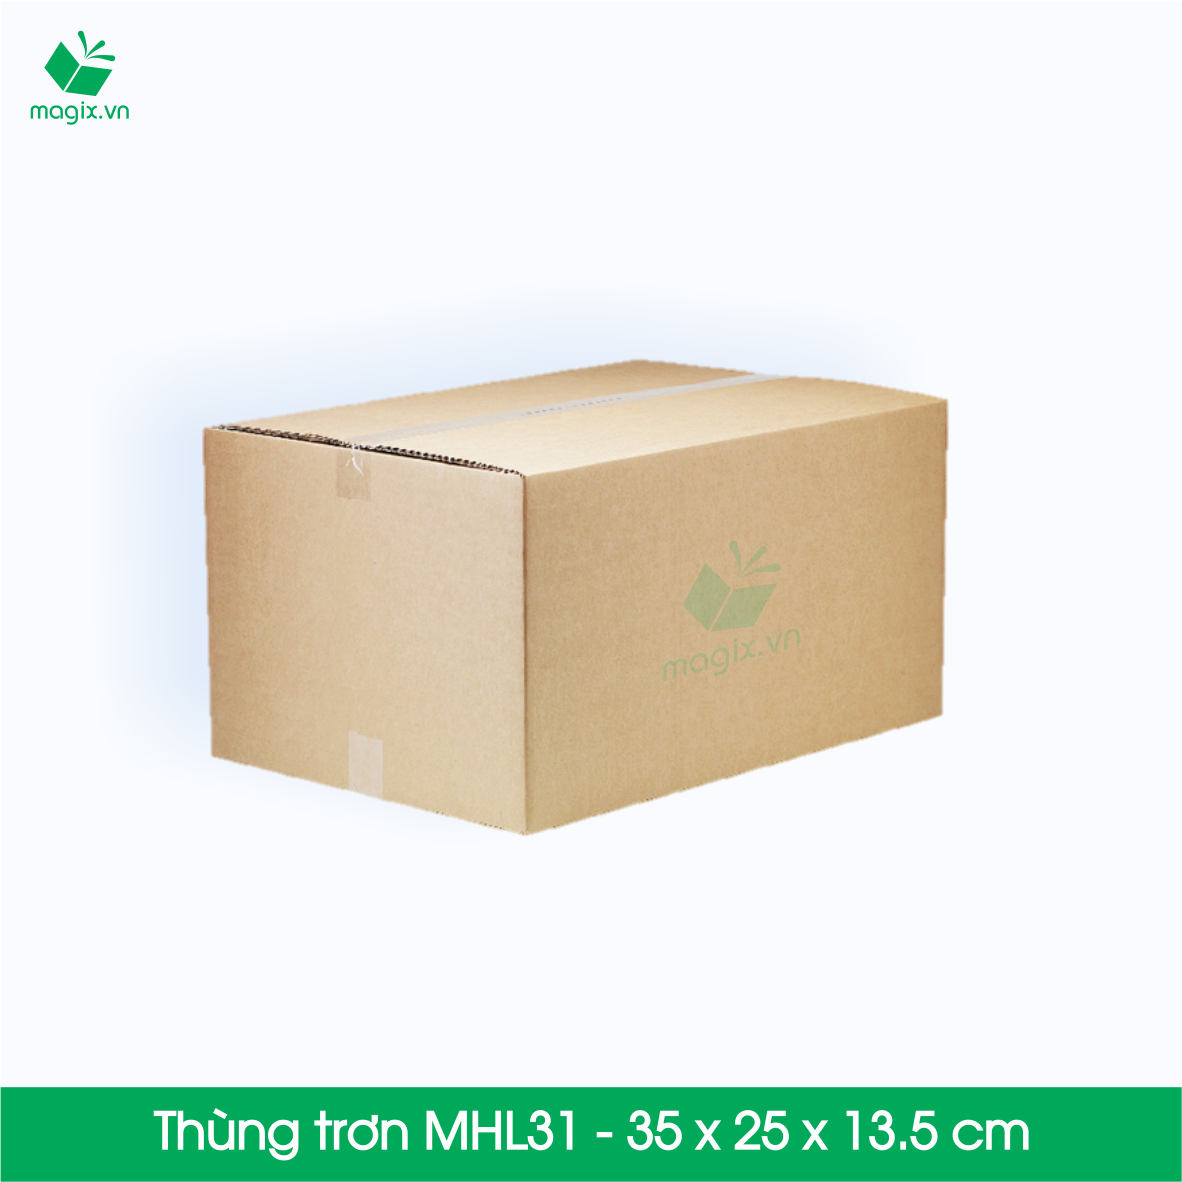 10 Thùng hộp carton - Mã MHL31 - Kích thước 35x25x13.5 cm